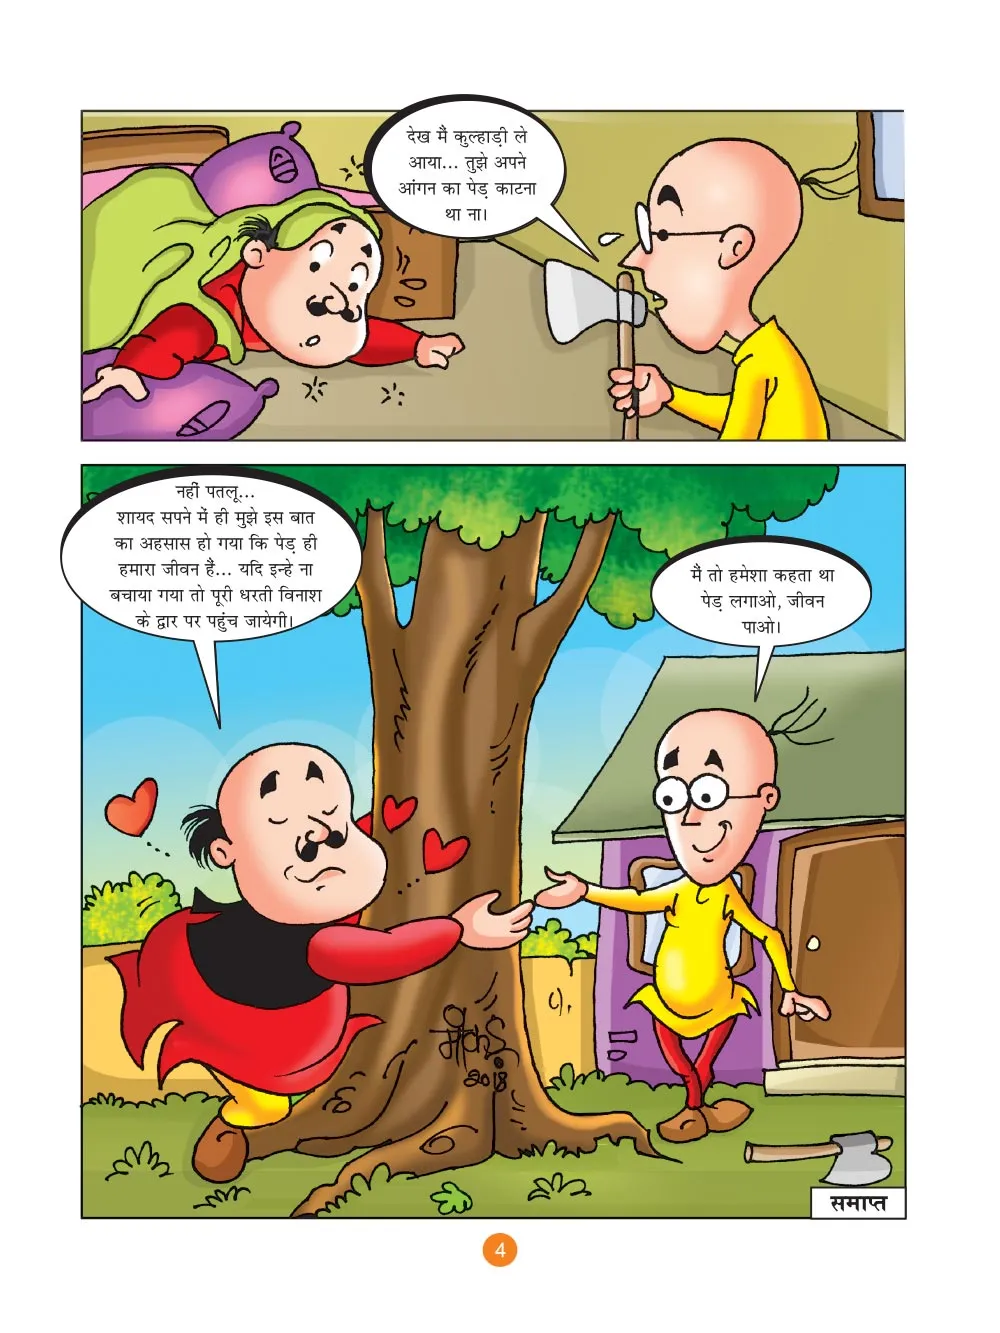 मोटू पतलू की कॉमिक्स : पेड़ लगाओ, जिन्दगी पाओ - Lotpot | Motu Patlu Comics